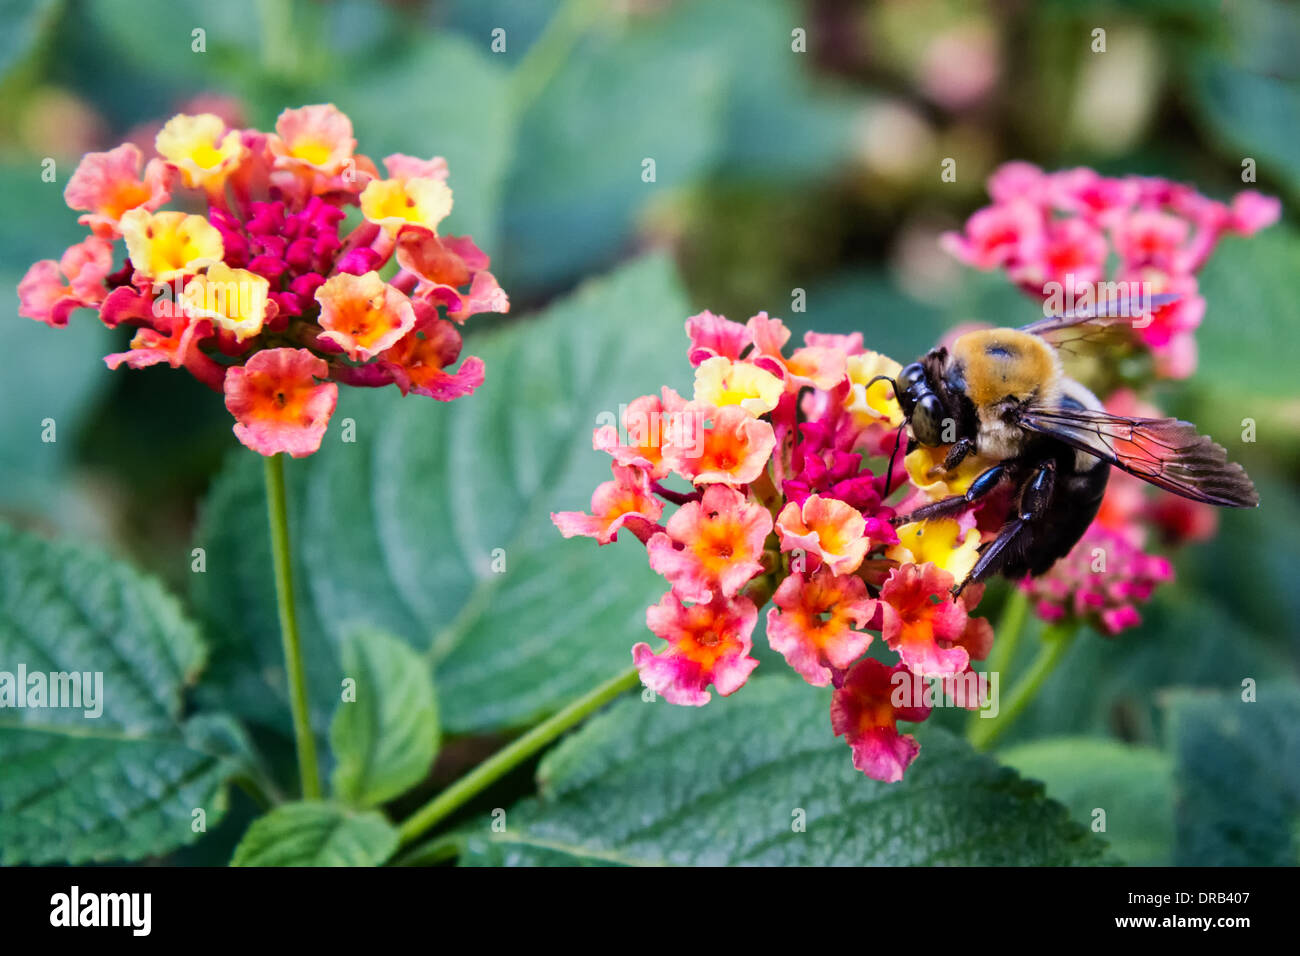 Un ape (Hymenoptera) raccoglie il polline dei fiori. Foto Stock